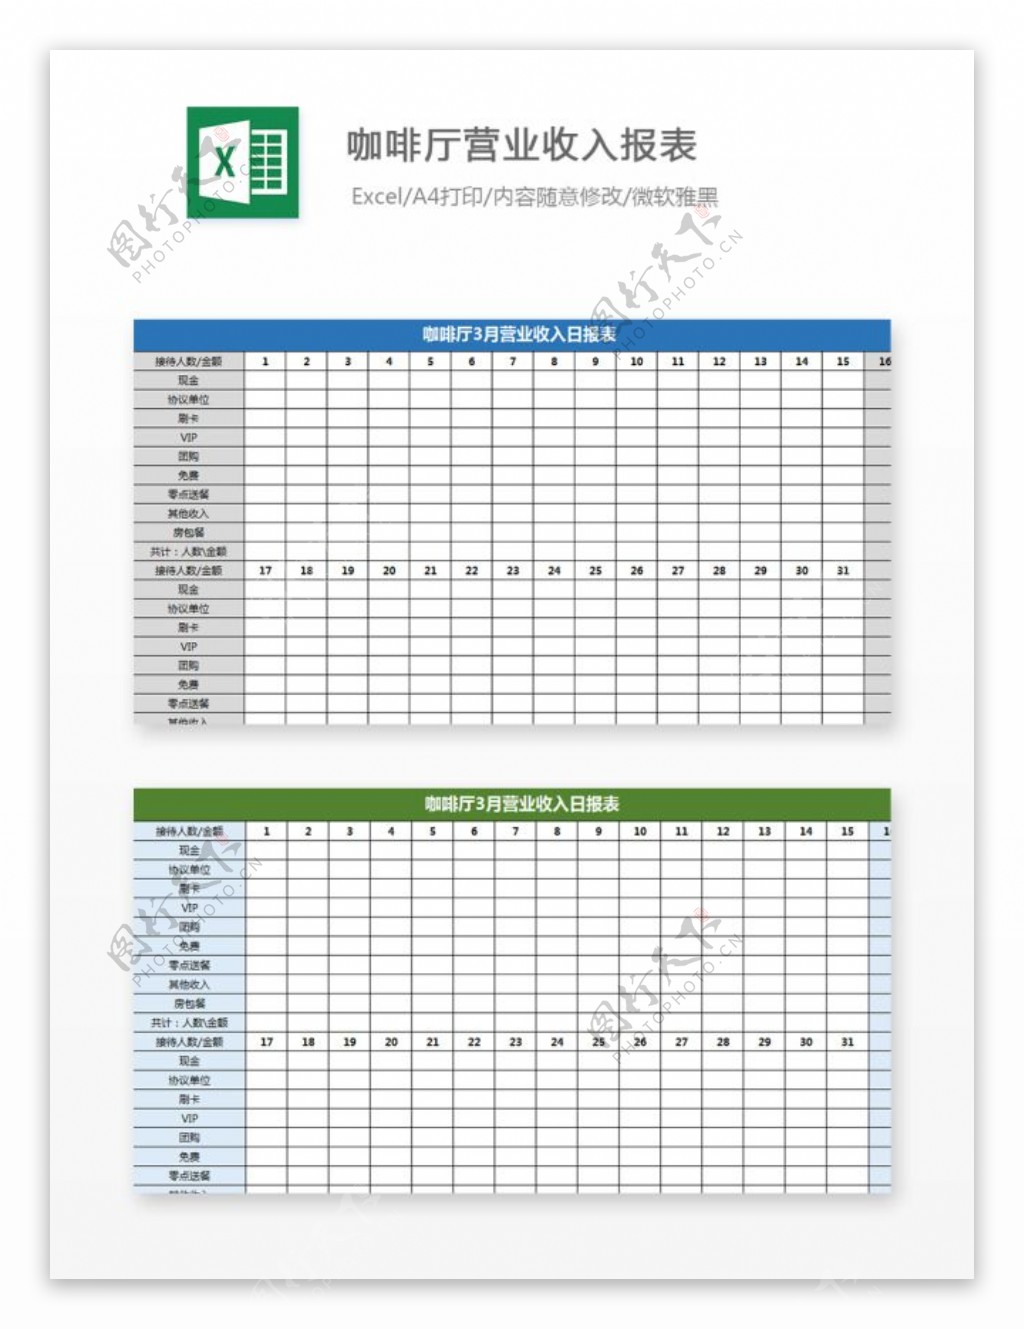 咖啡厅营业收入报表Excel图表